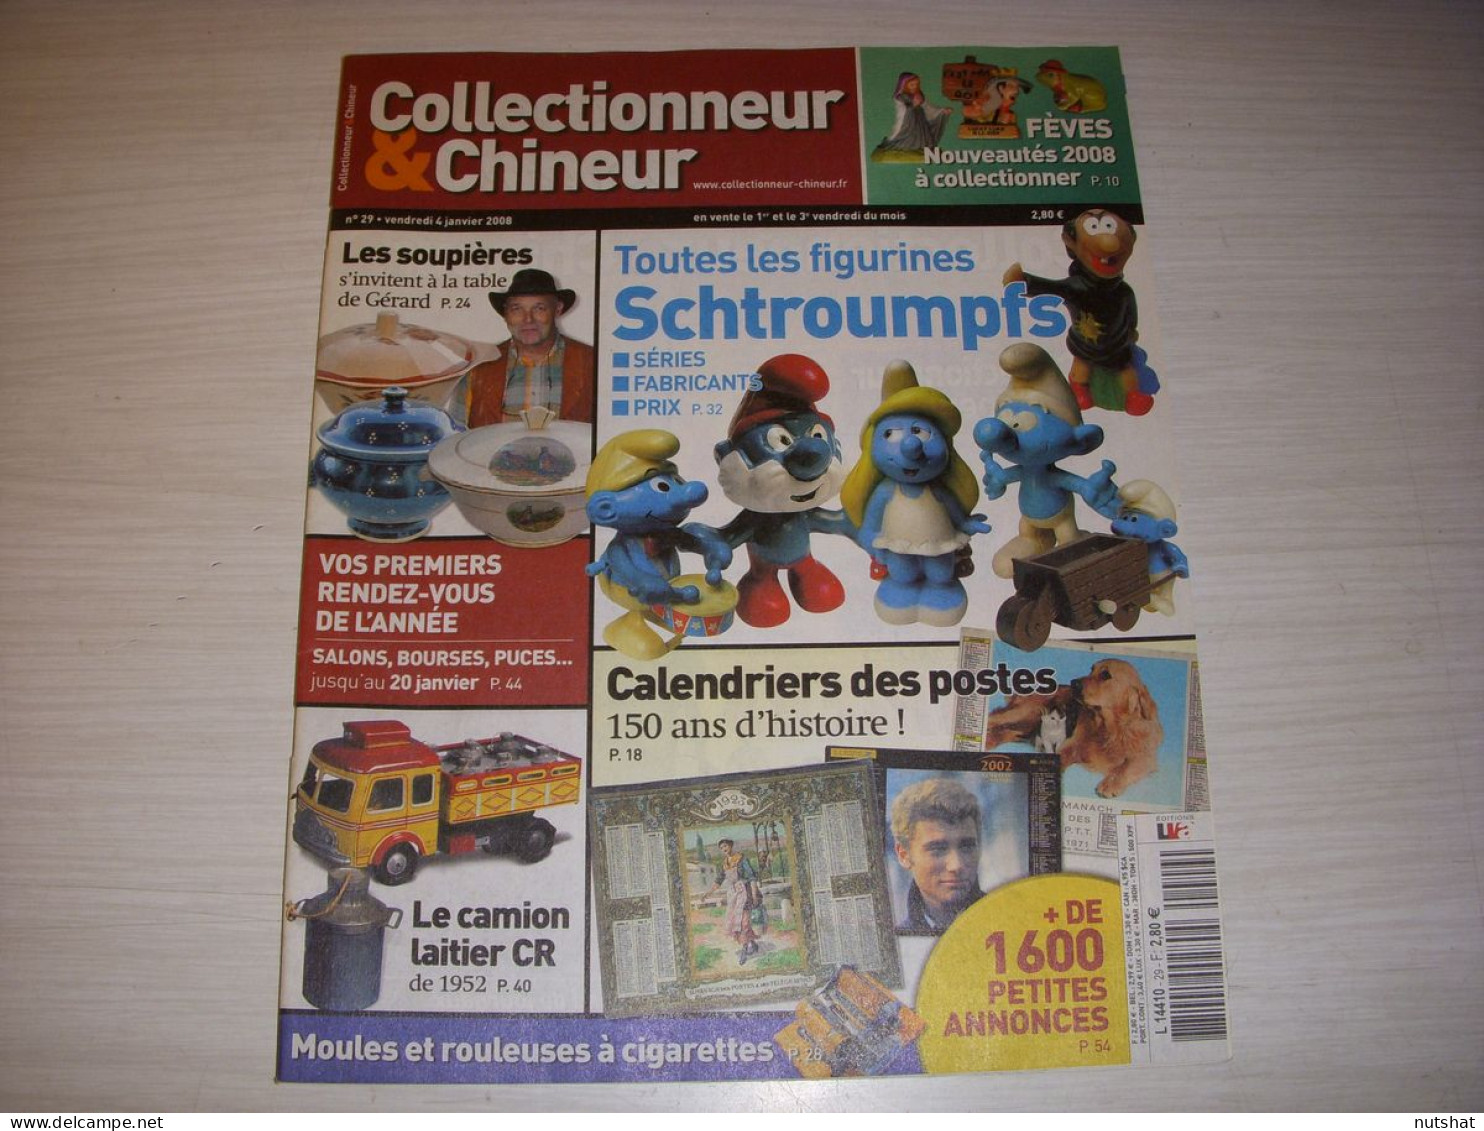 COLLECTIONNEUR CHINEUR 029 04.01.2008 SOUPIERES SCHTROUMPFS CALENDRIER POSTAL - Antichità & Collezioni